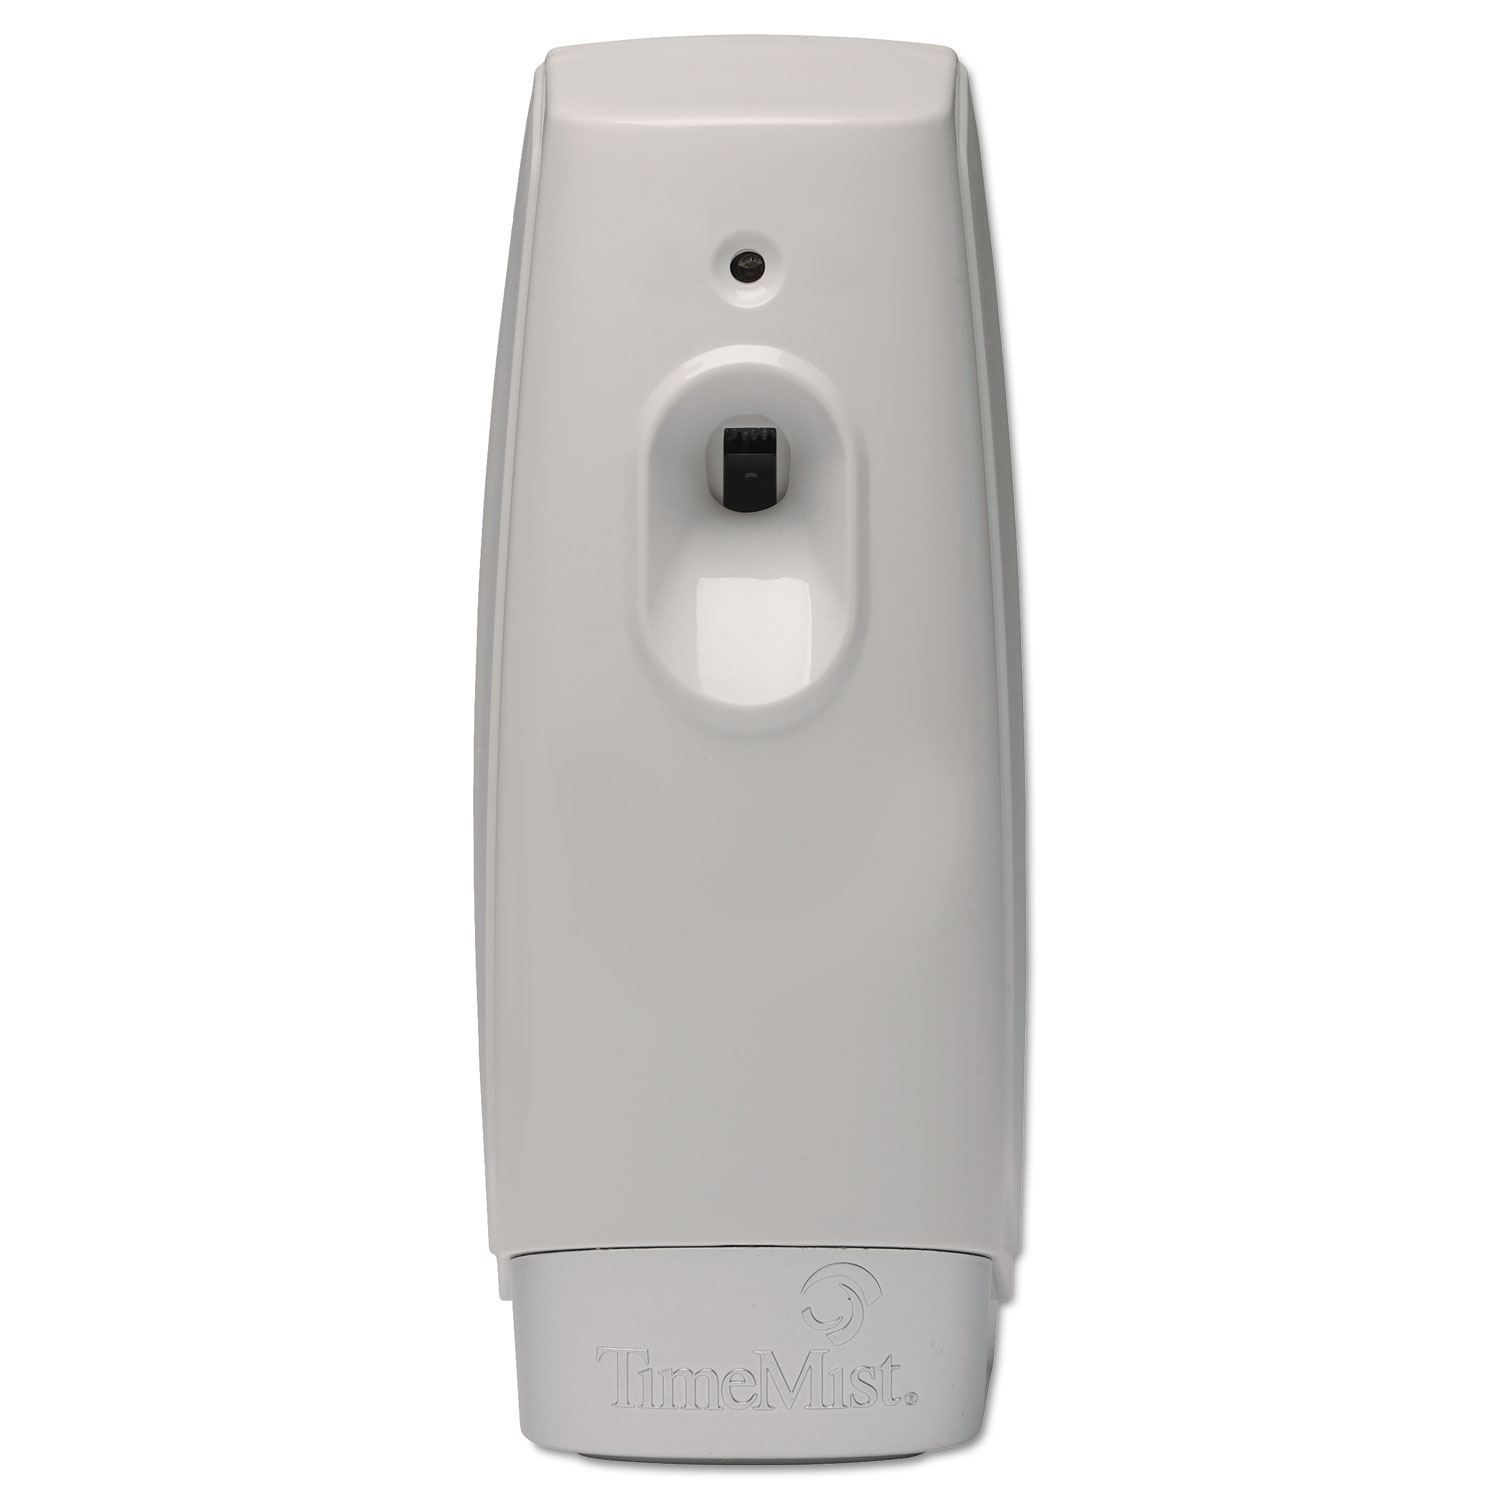  TimeMist 1047809 Settings Metered Air Freshener Dispenser, 3.4 x 3.4 x 8.25, White (TMS1047809) 